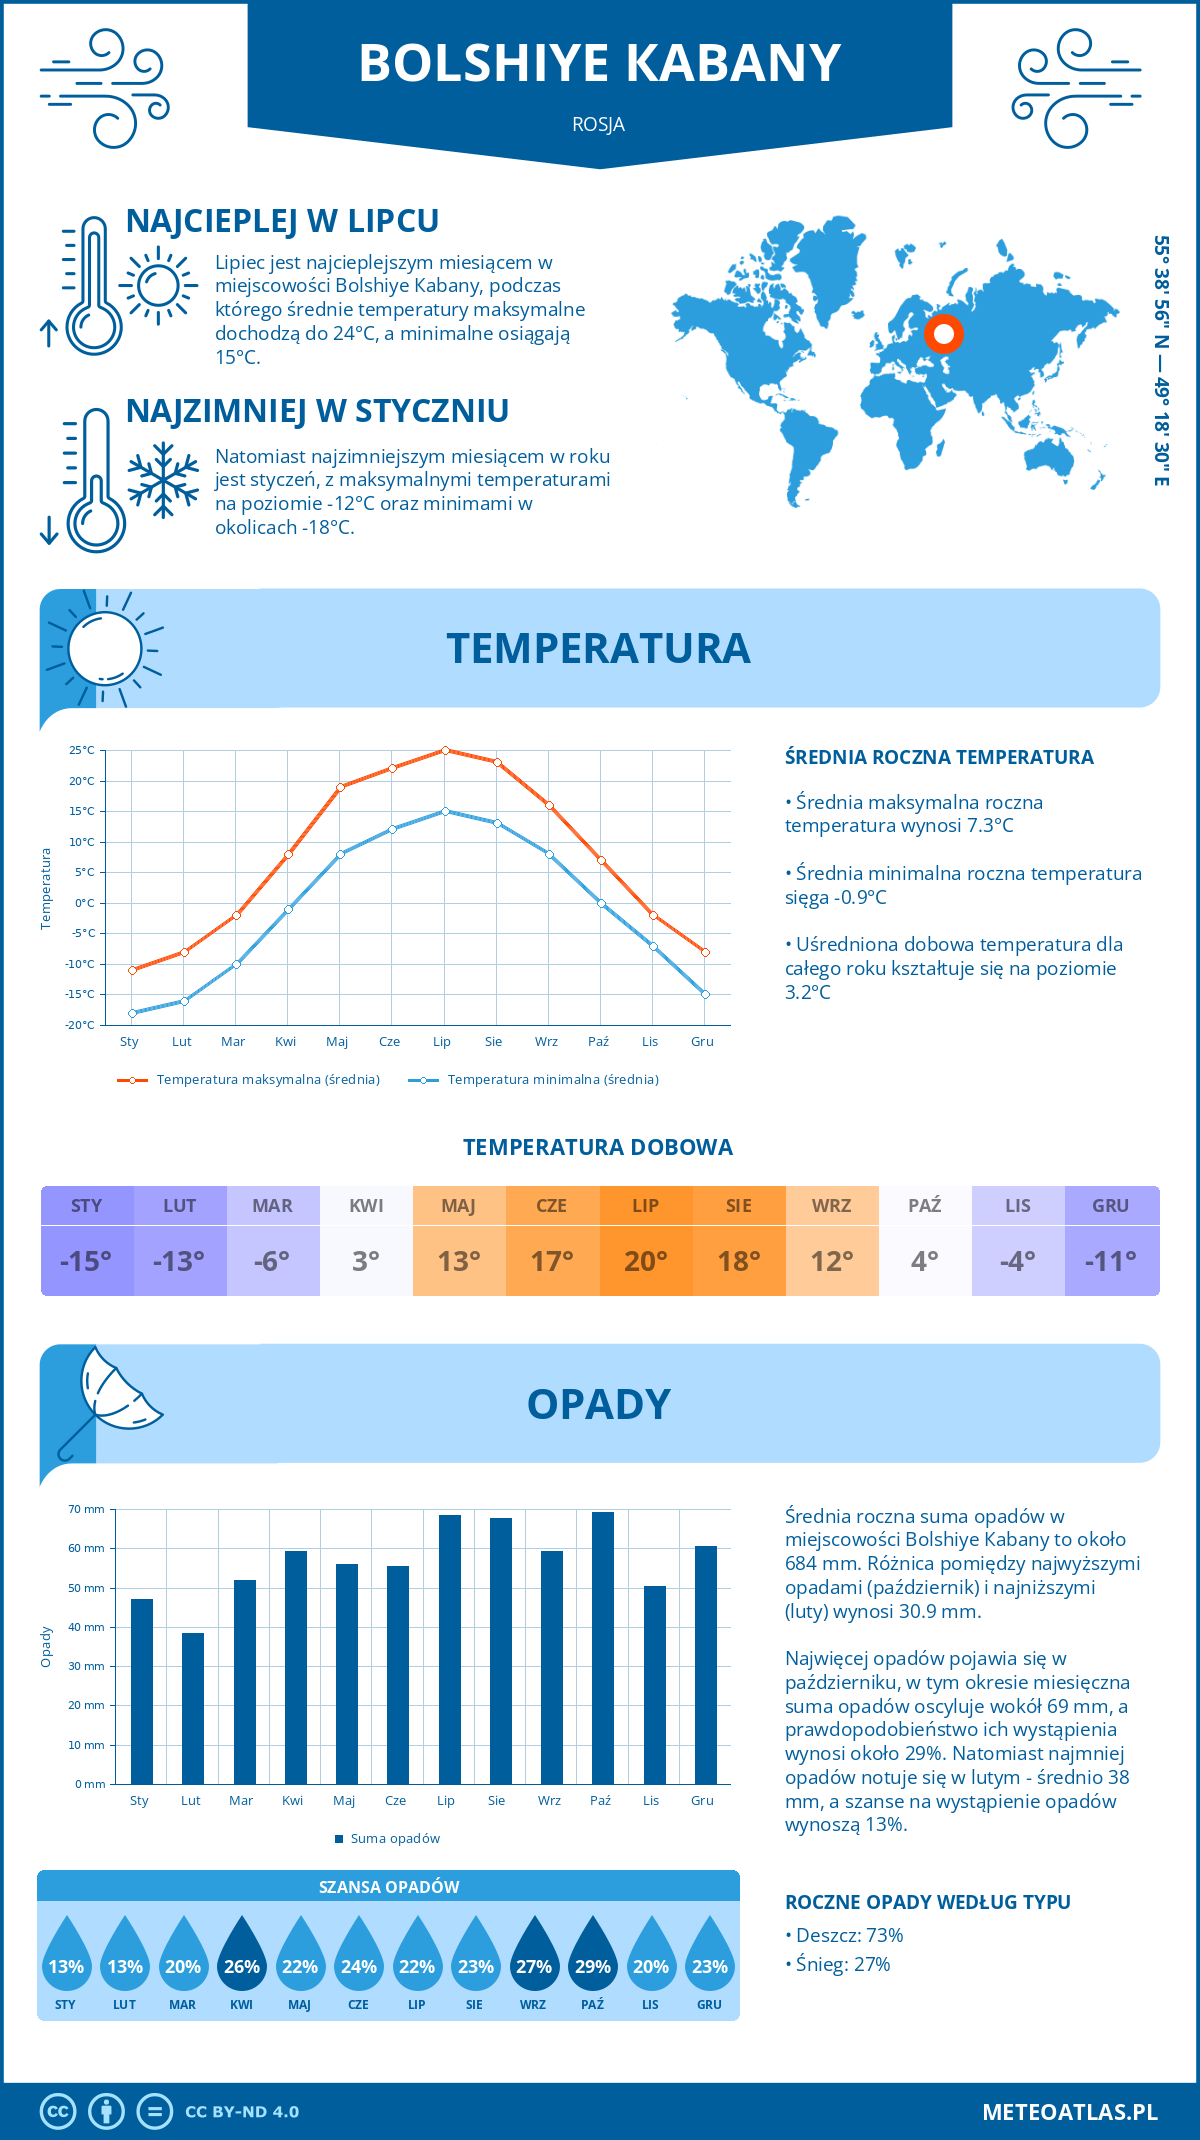 Pogoda Bolshiye Кabany (Rosja). Temperatura oraz opady.